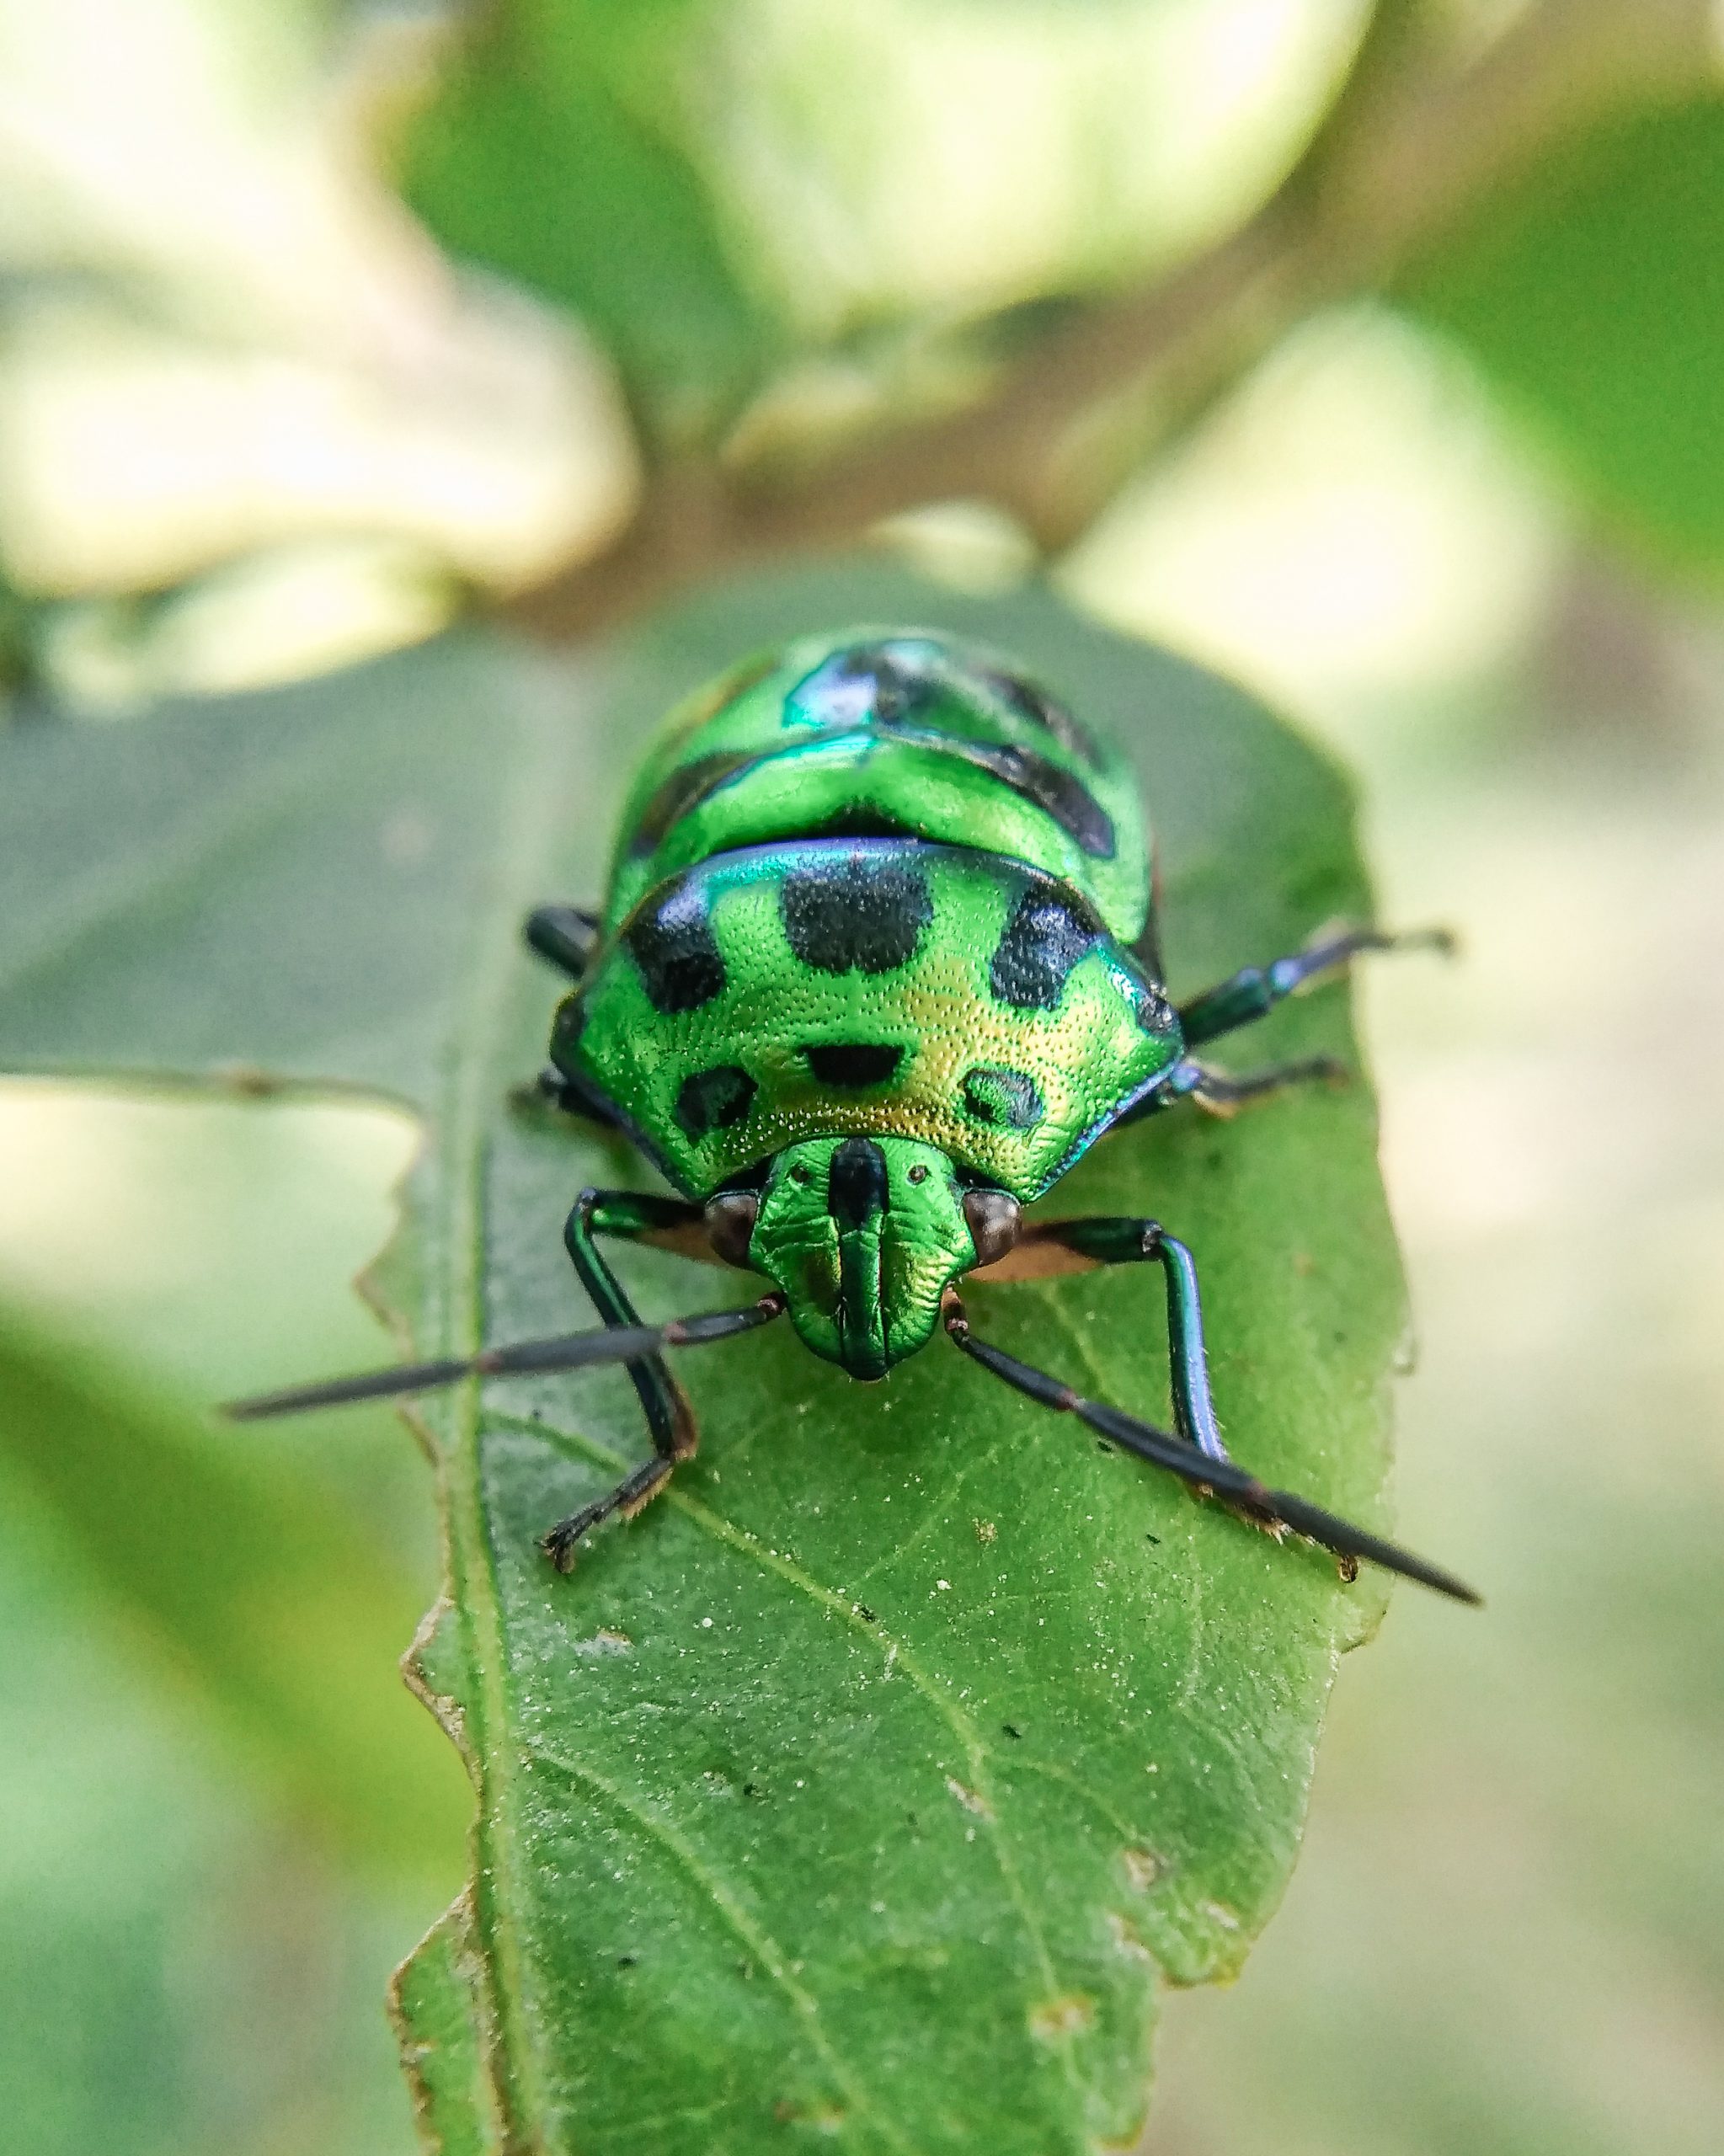 A beetle bug on a leaf